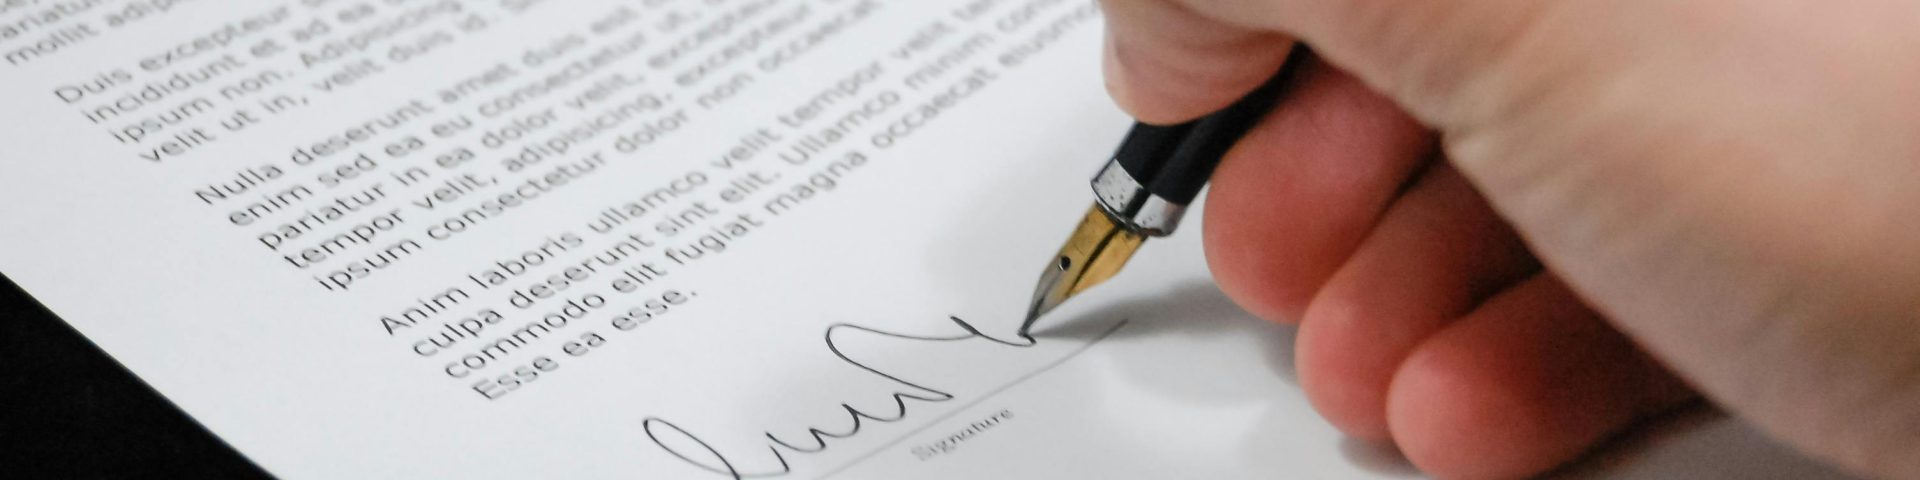 De ce este important să consulți un avocat înainte de a semna un contract?